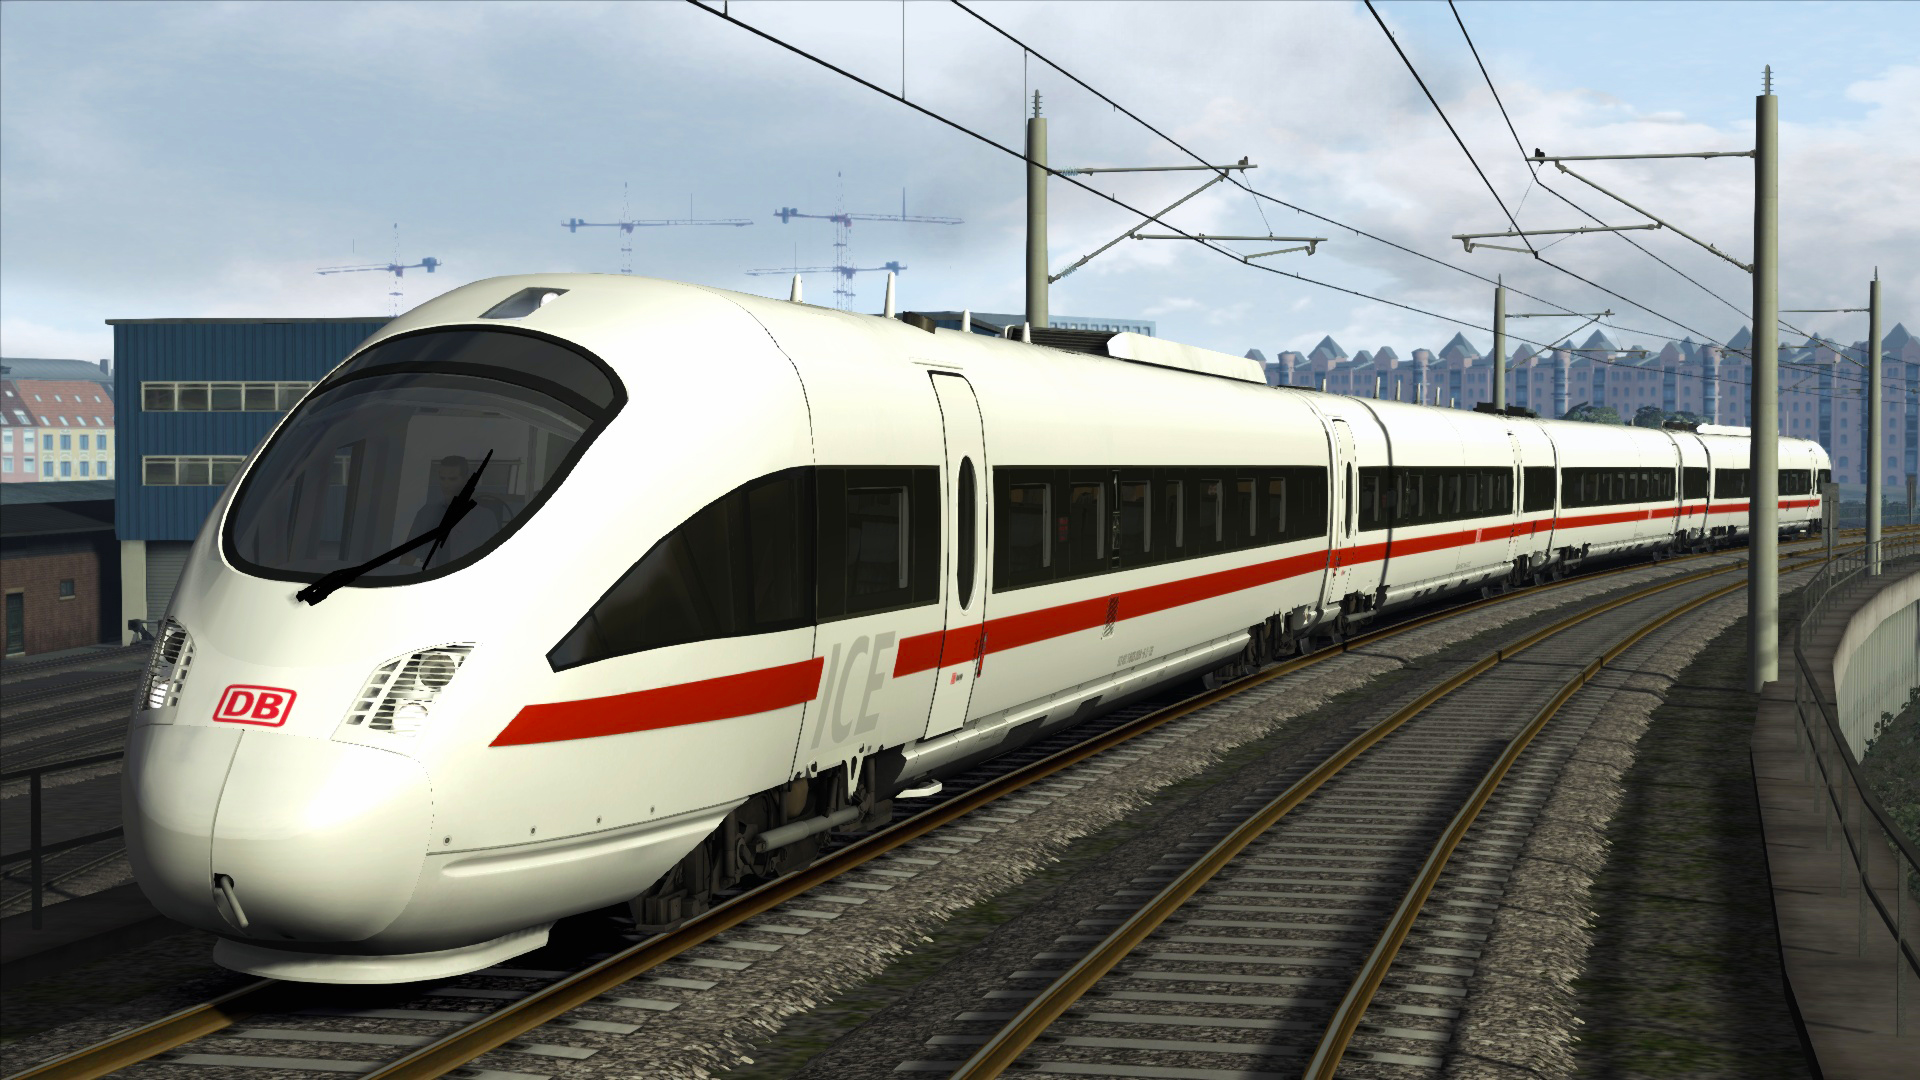 Train Simulator - DB BR 605 ICE TD Add-On DLC Steam CD Key, $1.34